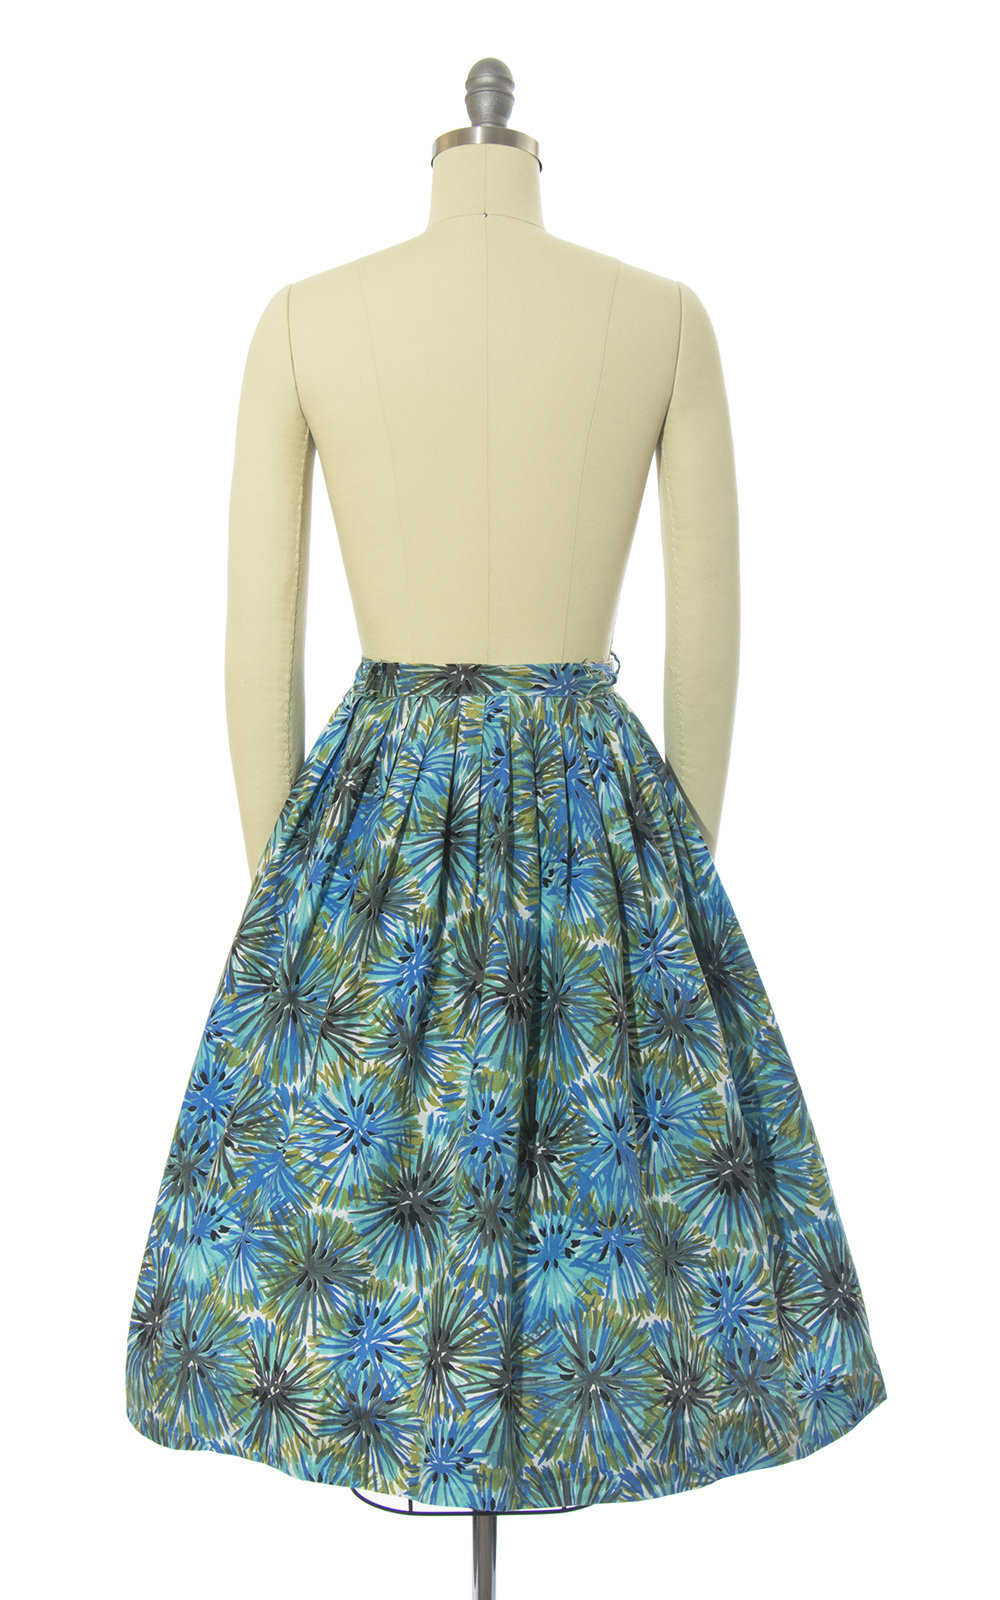 Vintage 1950s Skirt | 50s Dandelion Fireworks Print Cotton Blue Green Full Swing Skirt (small)